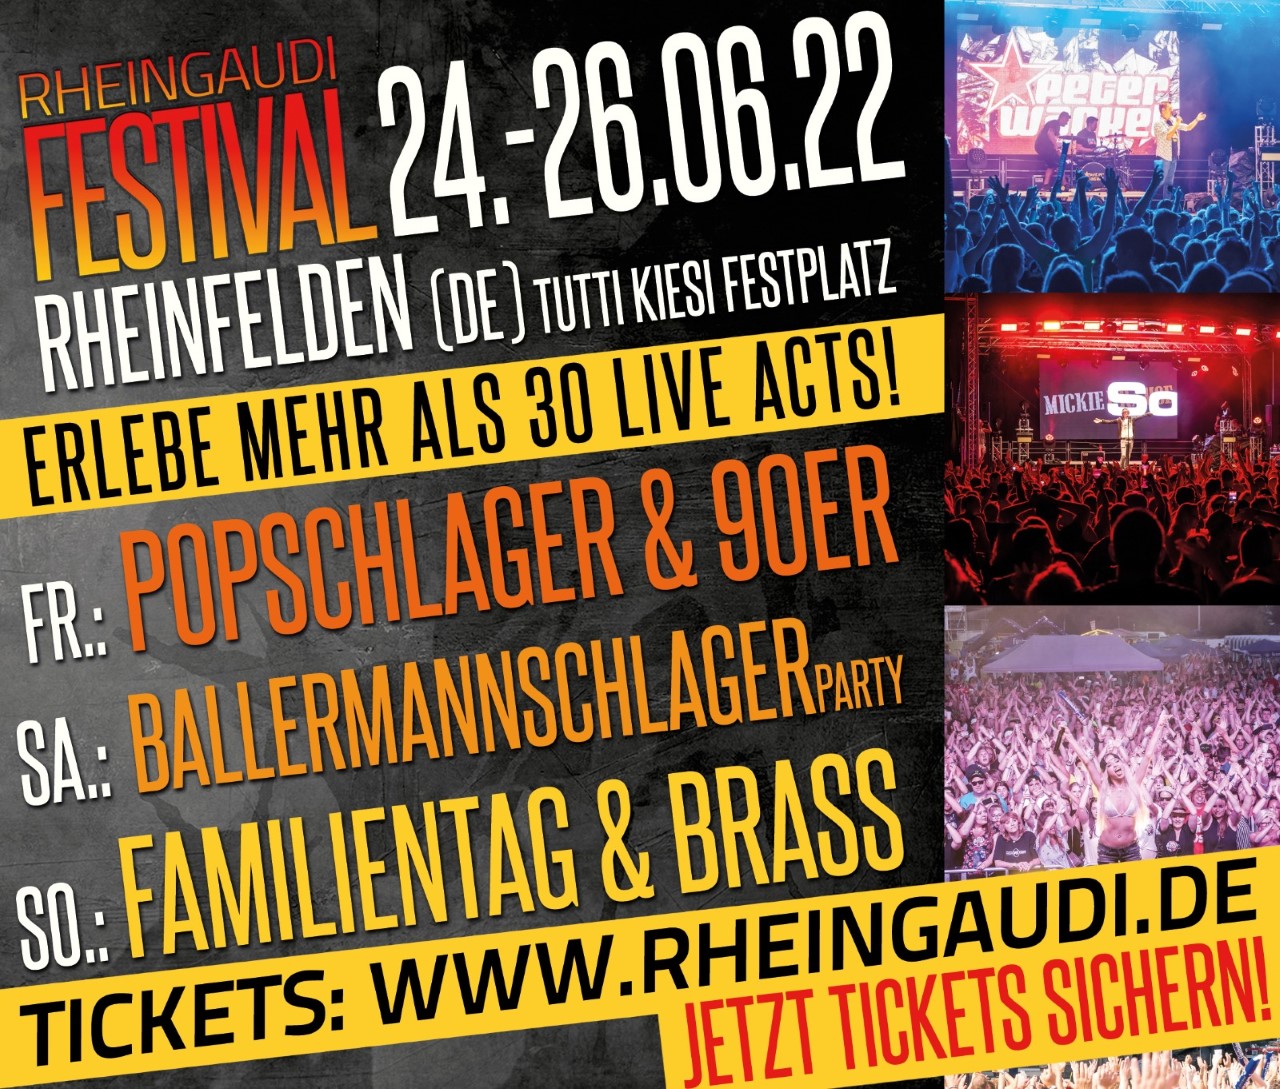 Rheingaudi Festival vom 24. – 26.6.22: So sieht das Party-Programm aus